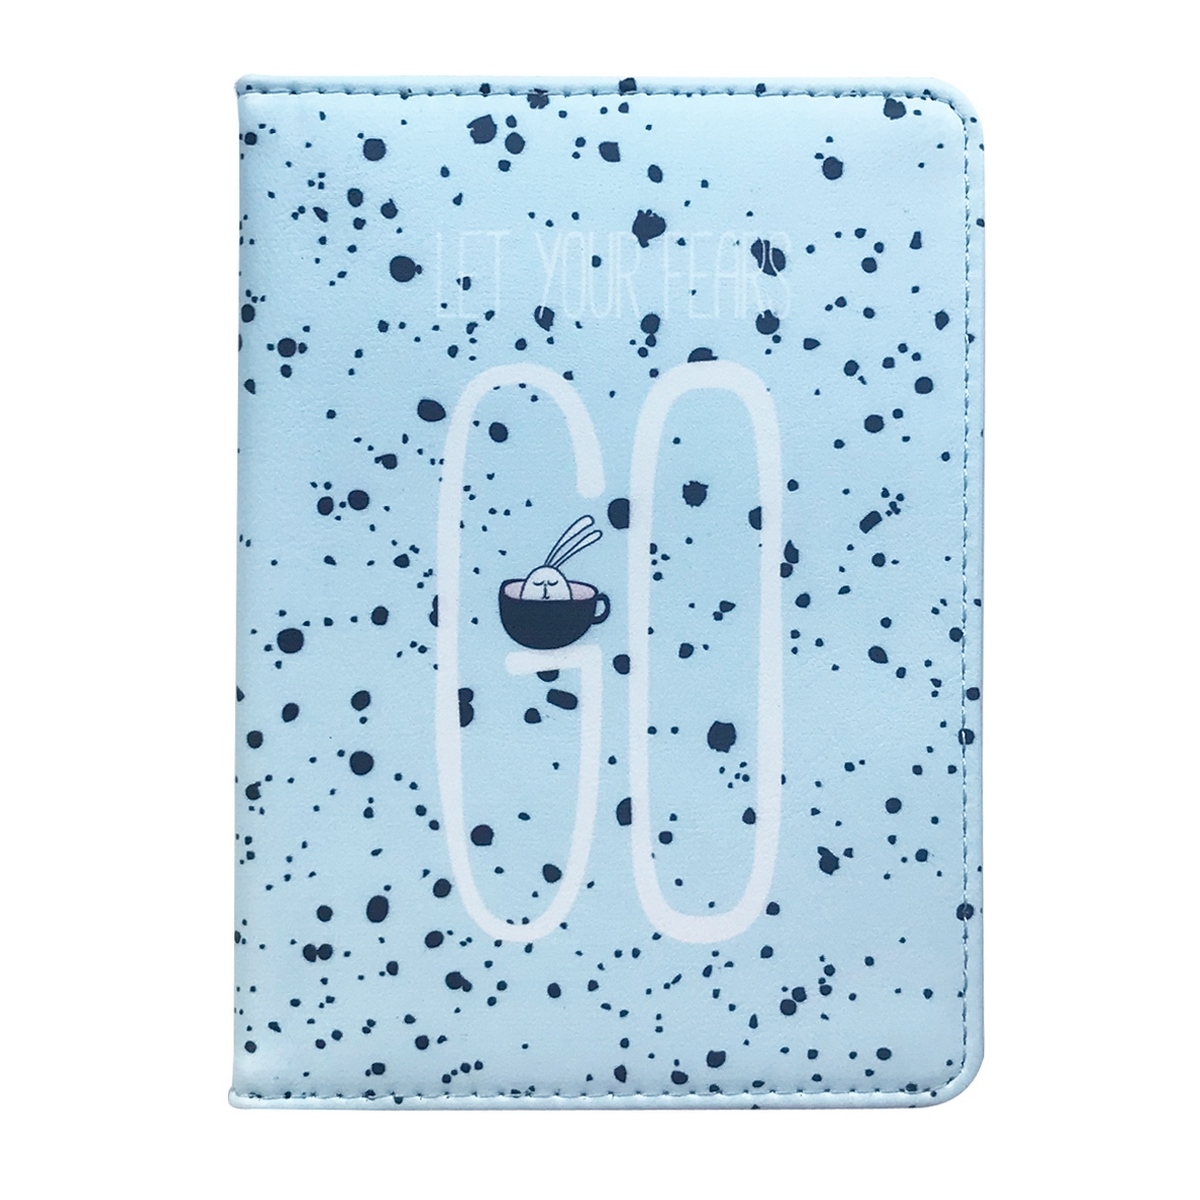 Обложка для паспорта Be Smart  Bunny обложка для паспорта цвет голубой